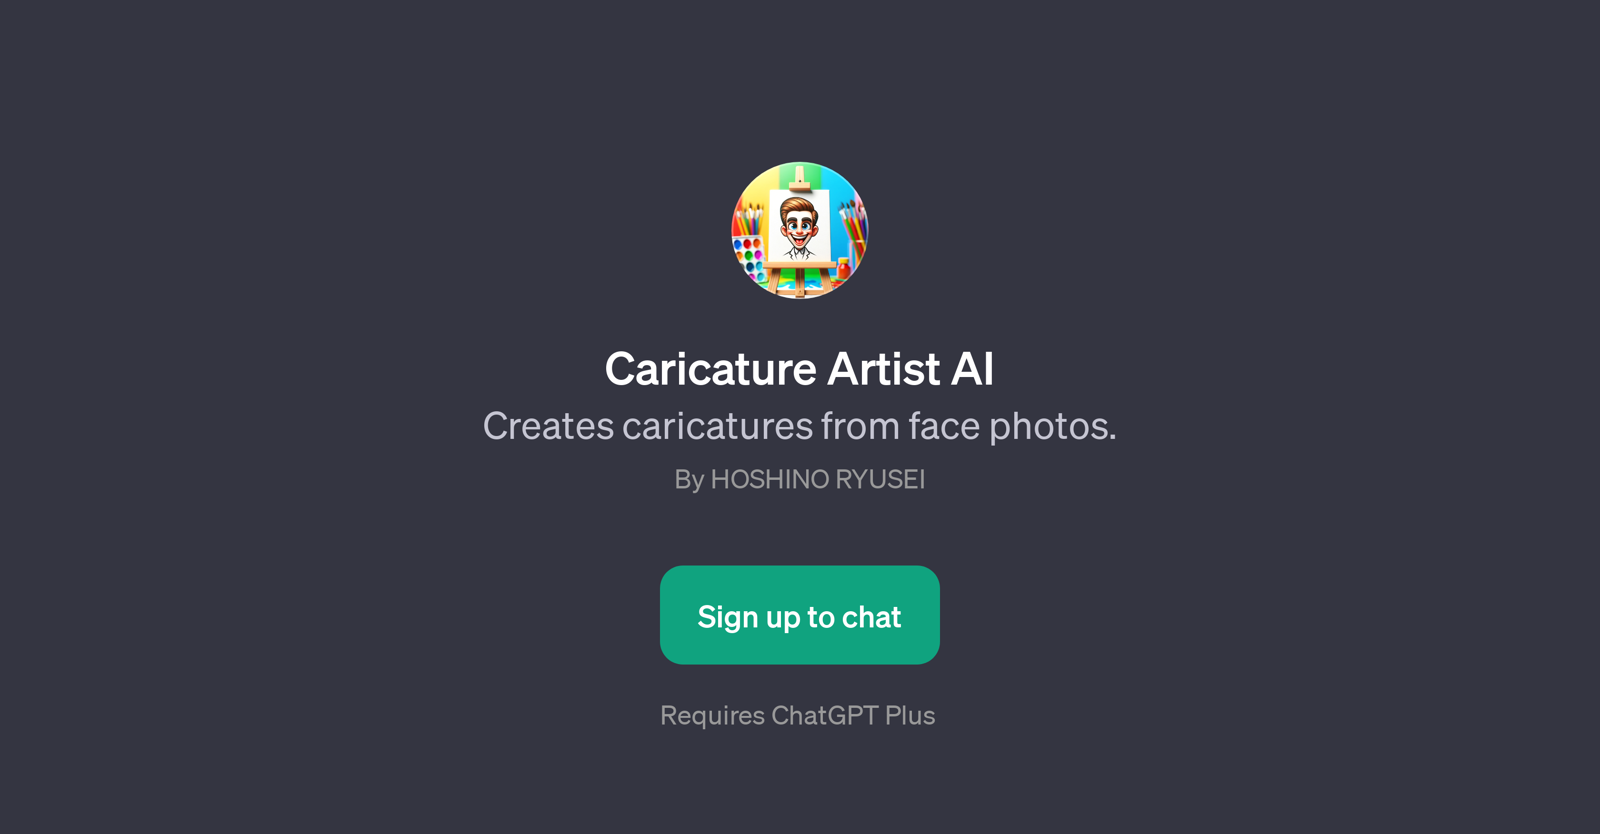 Caricature Artist AI website